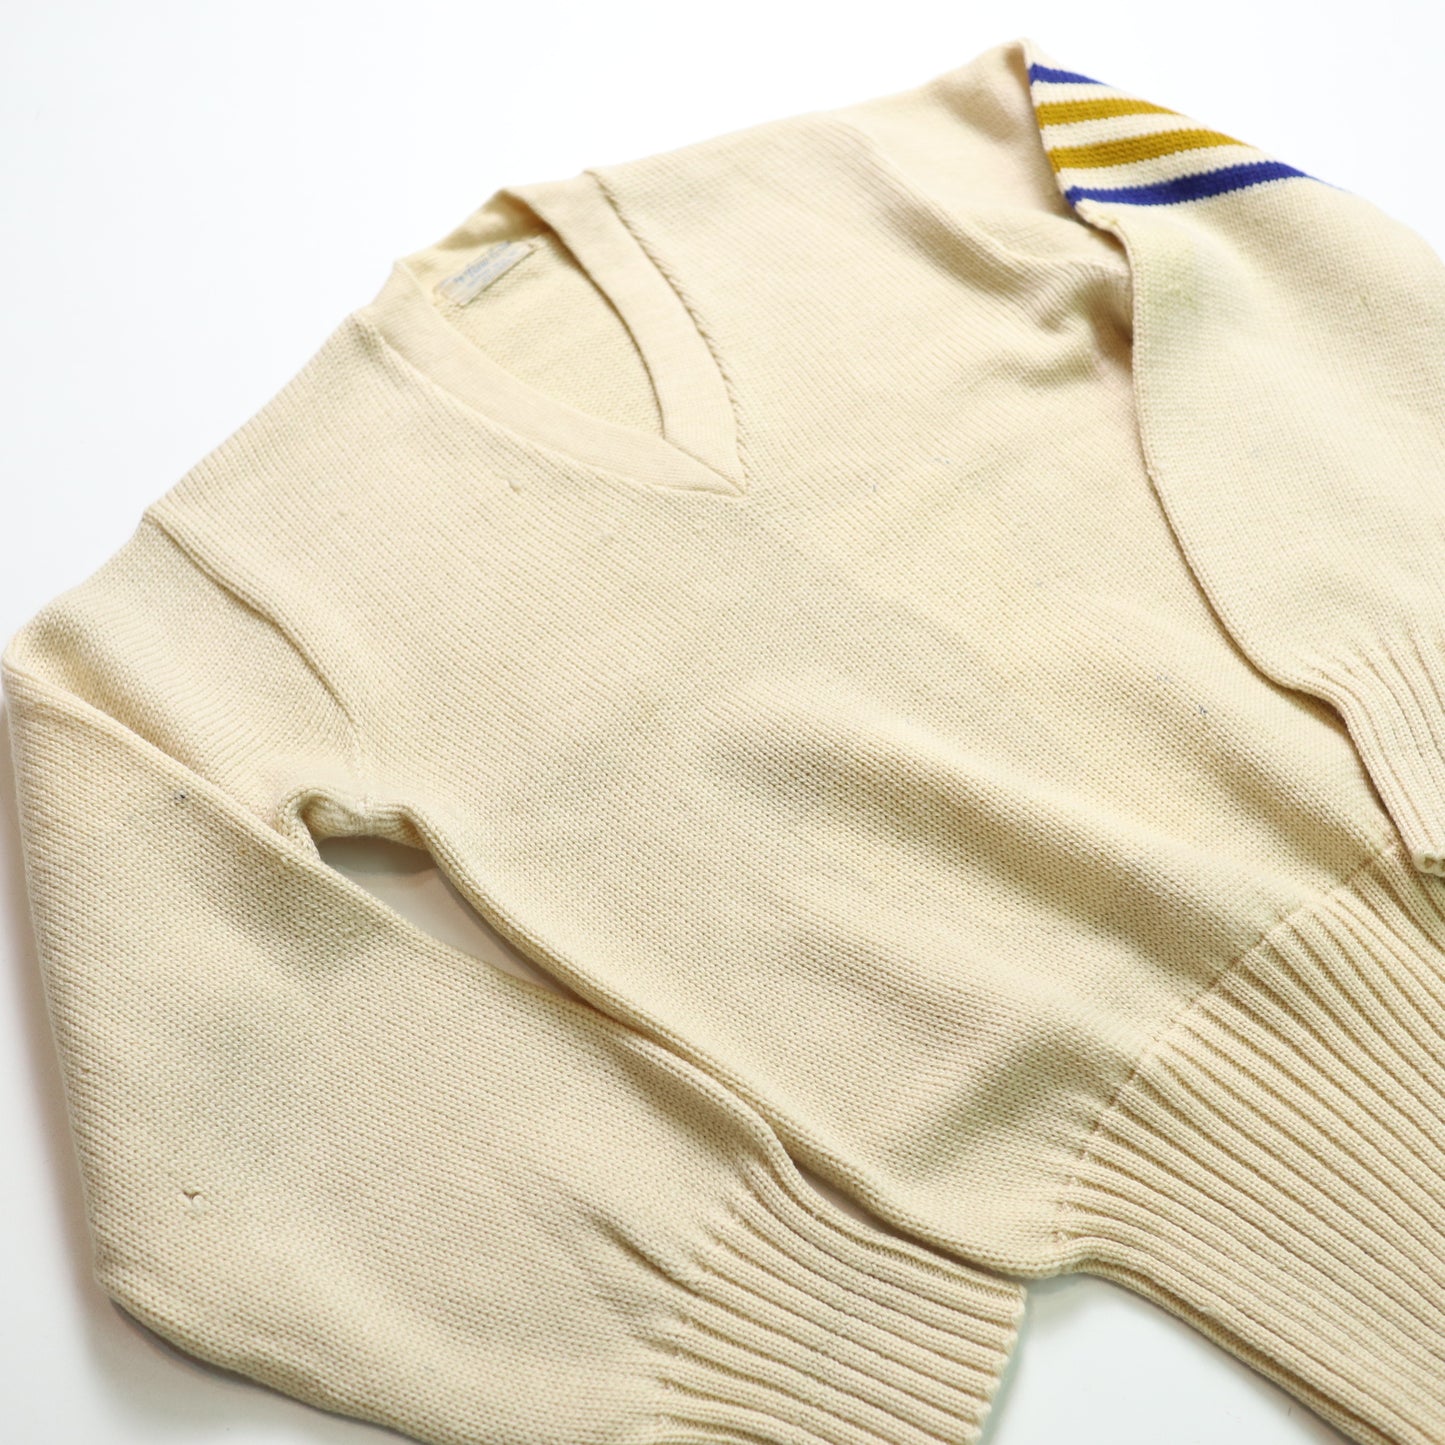 70's Letterman Sweater 美國校園針織衫